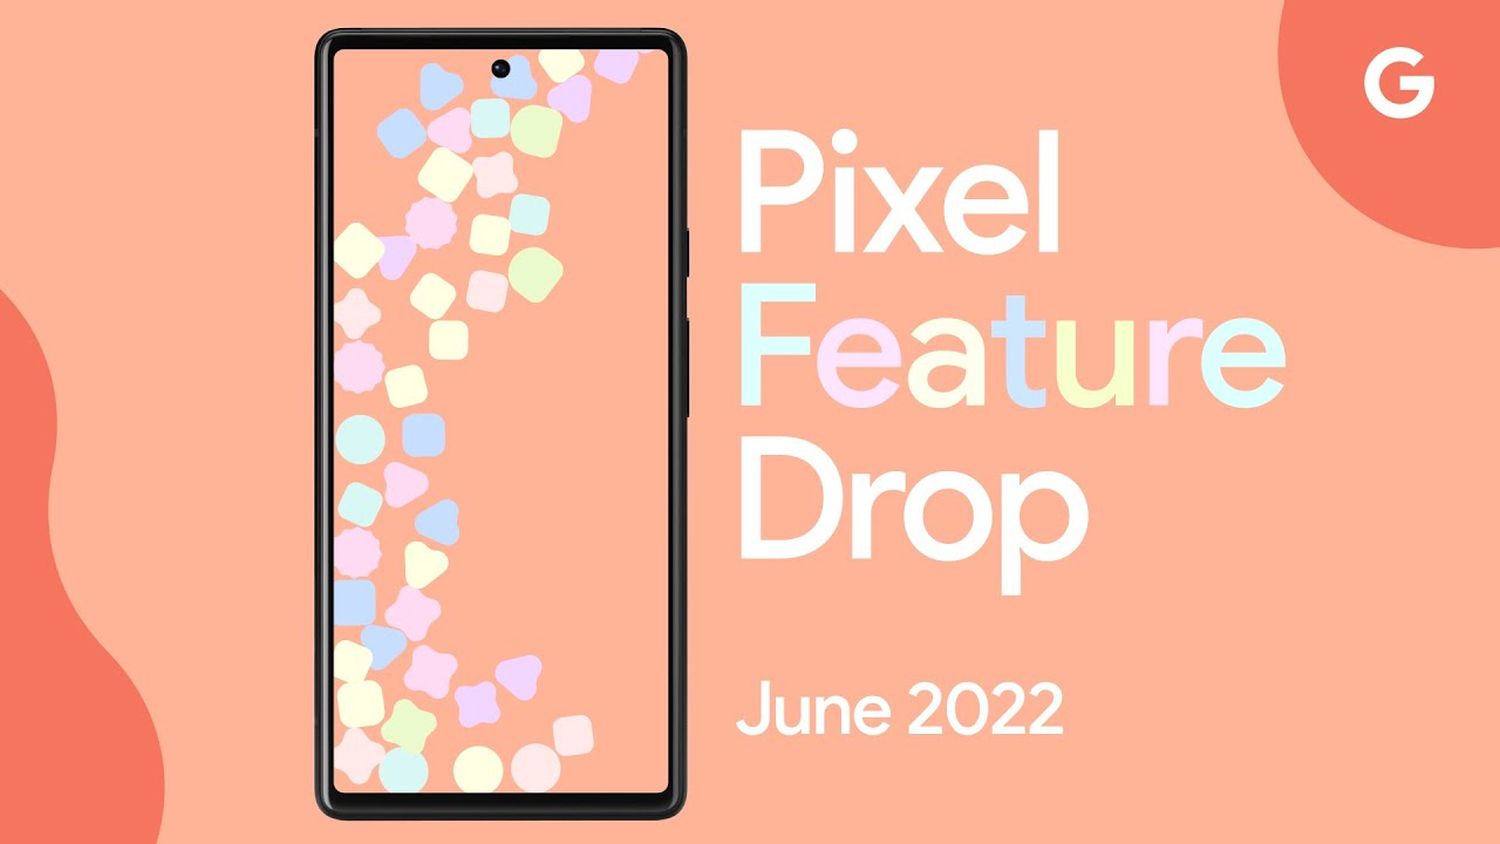 Pixel Feature Drop June 2022